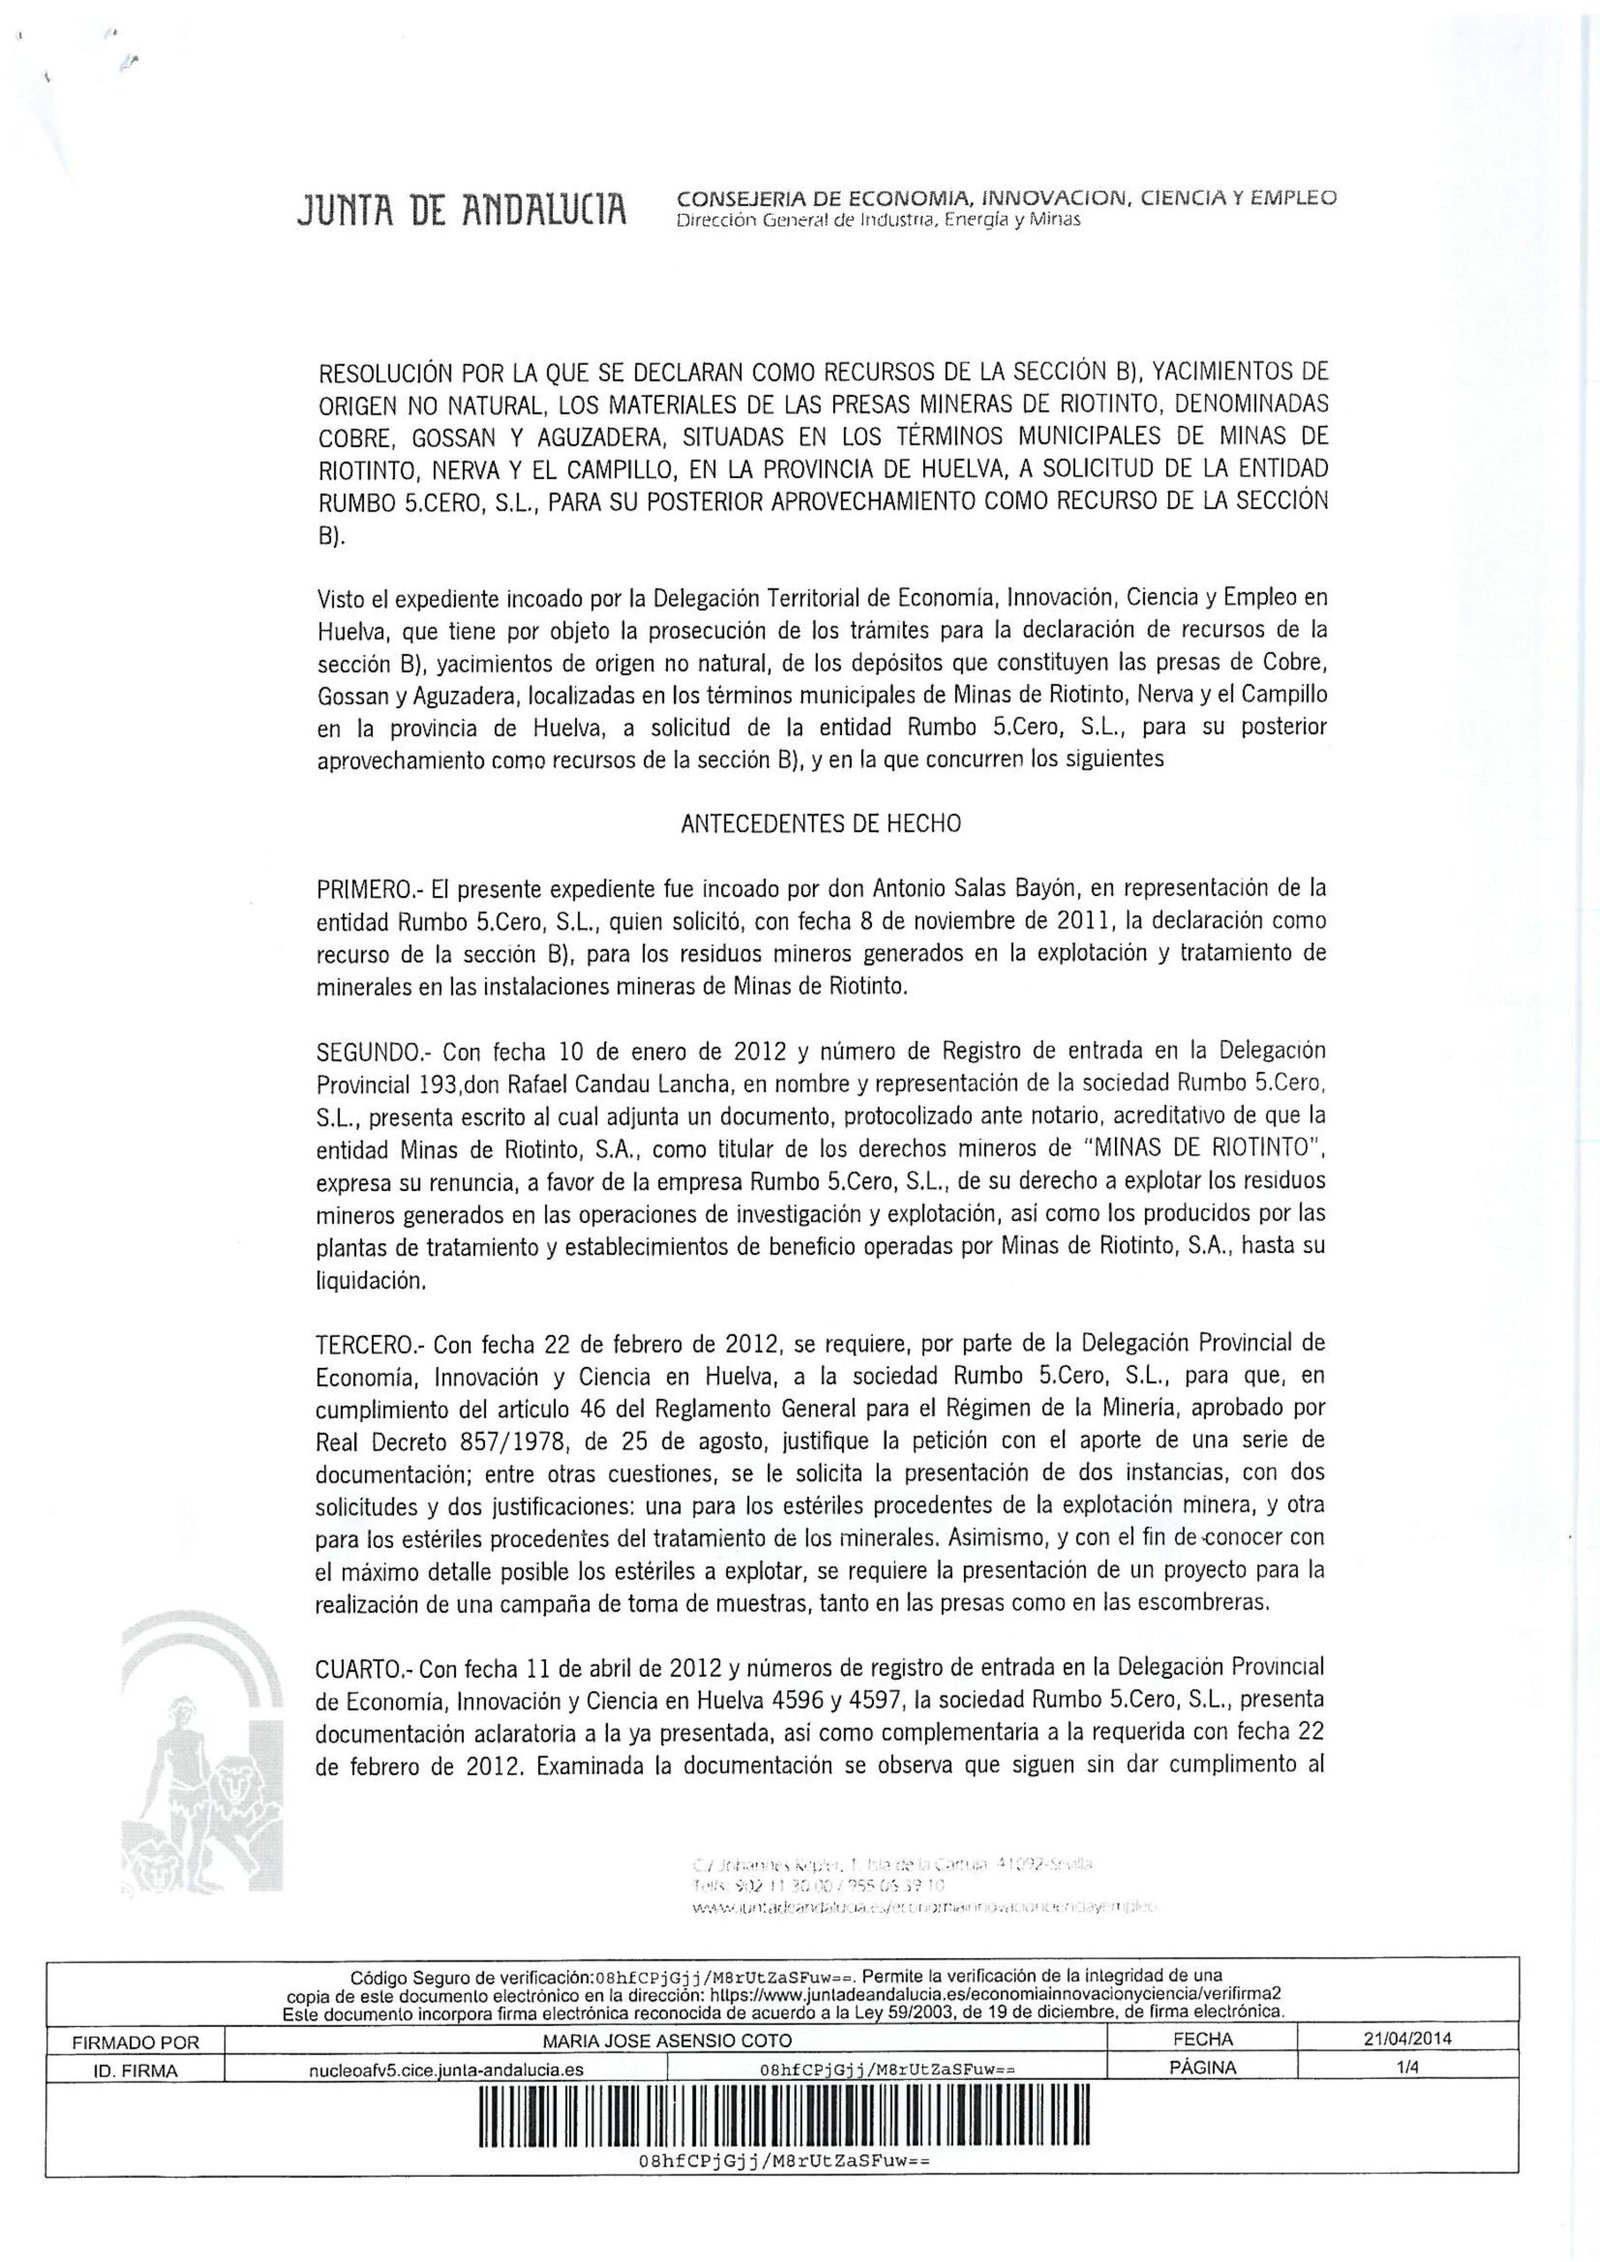 Declaración como Recursos de la Sección B a las Balsas de Rio Tinto